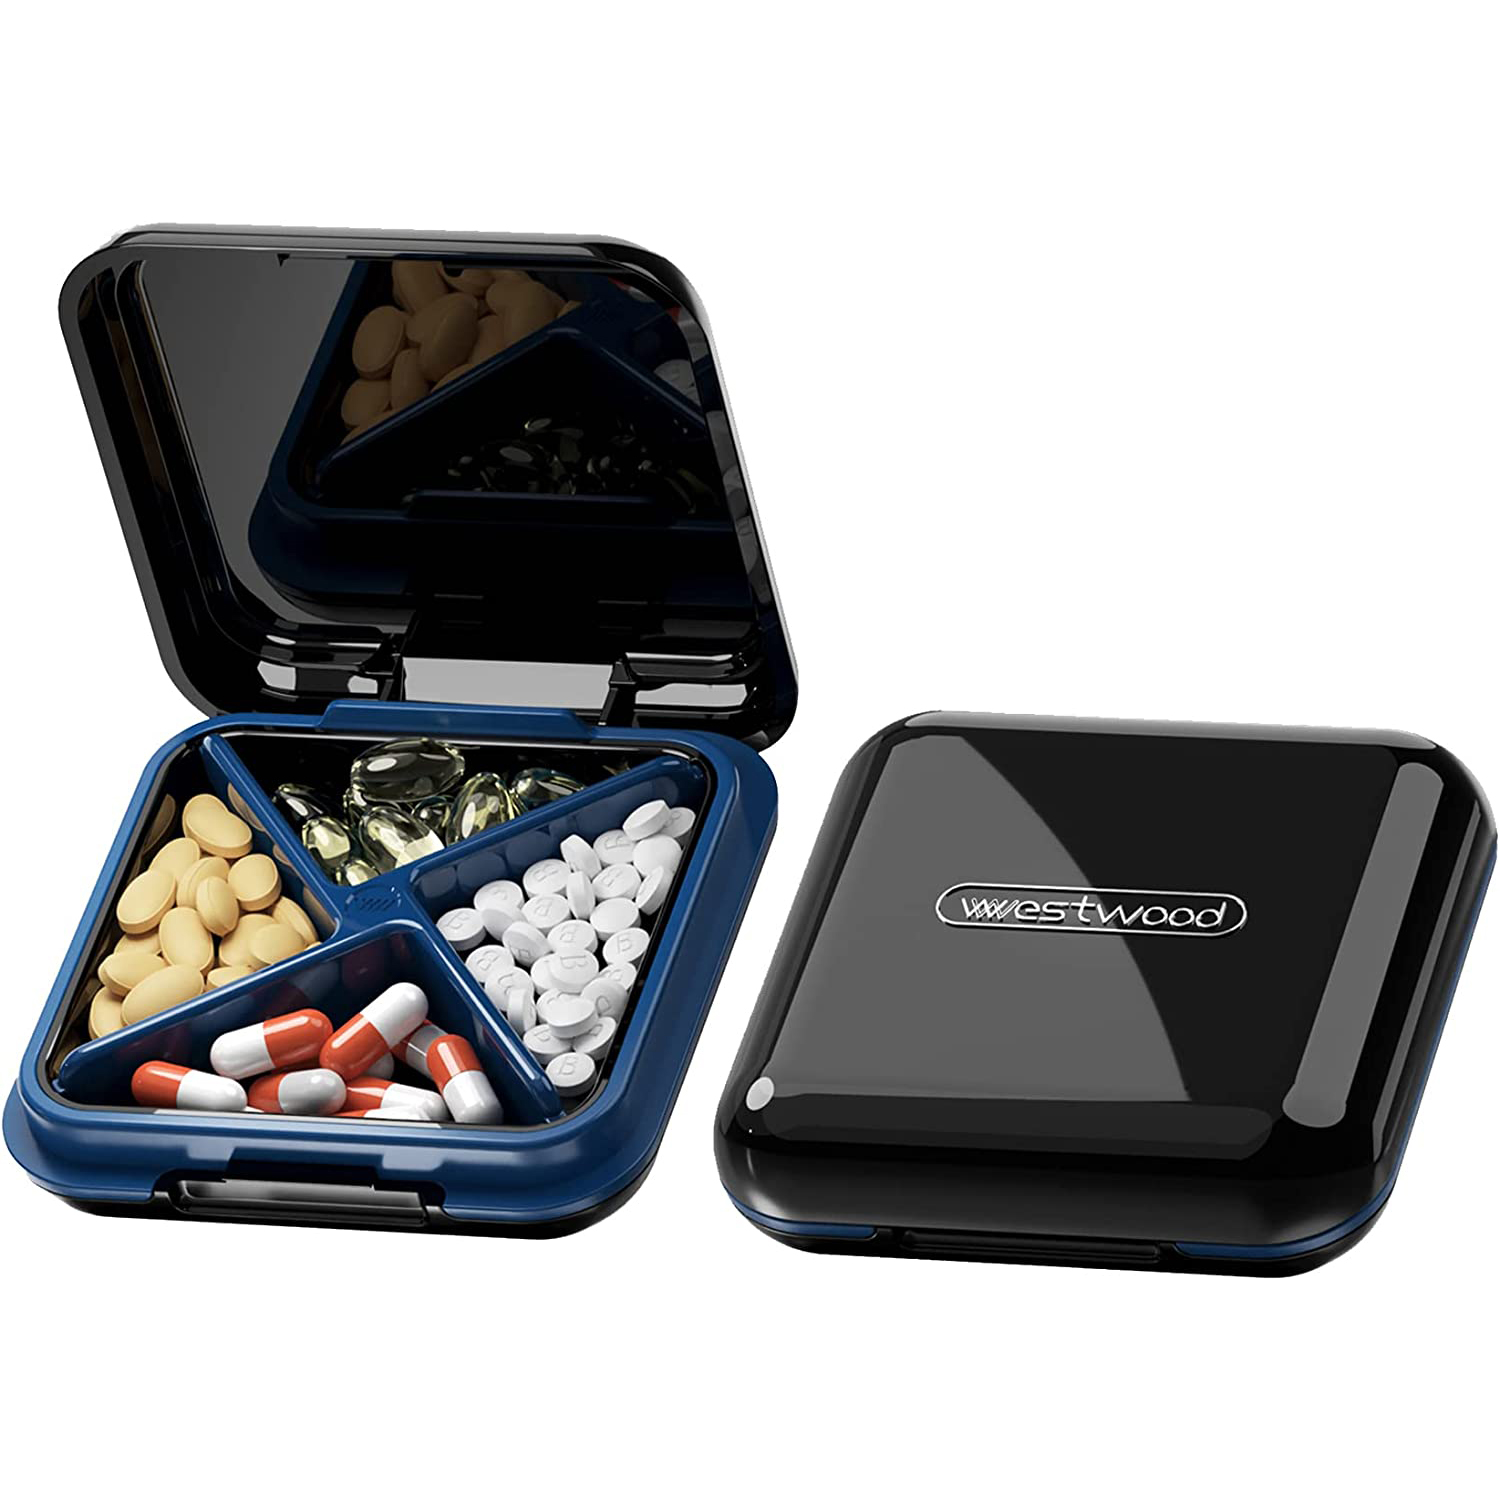 Mini Travel Pill Organizer Box